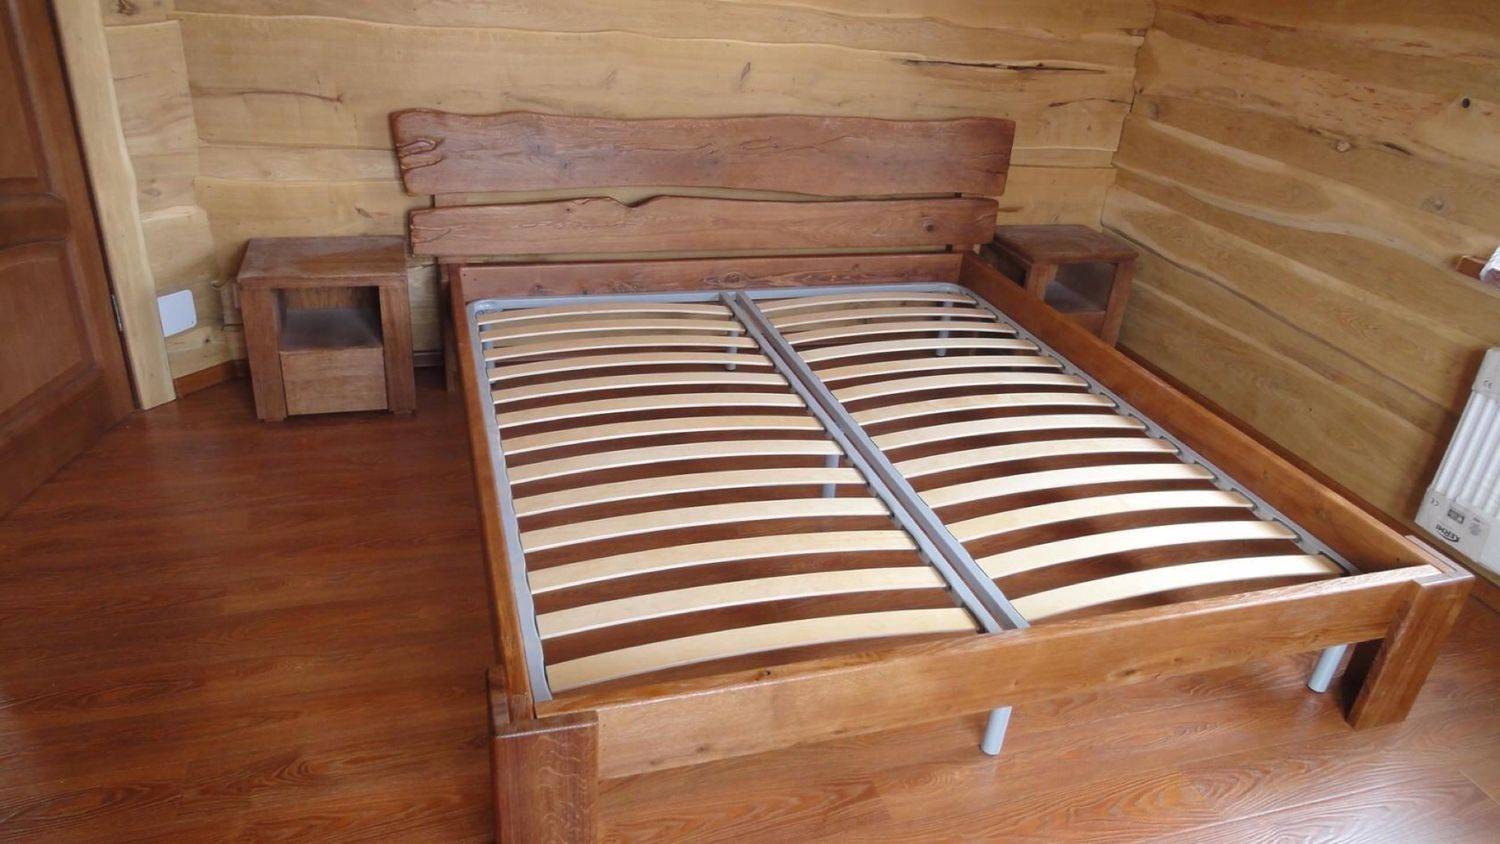 Кровать своими руками (двуспальная из дерева): устройство, чертежи, компоненты